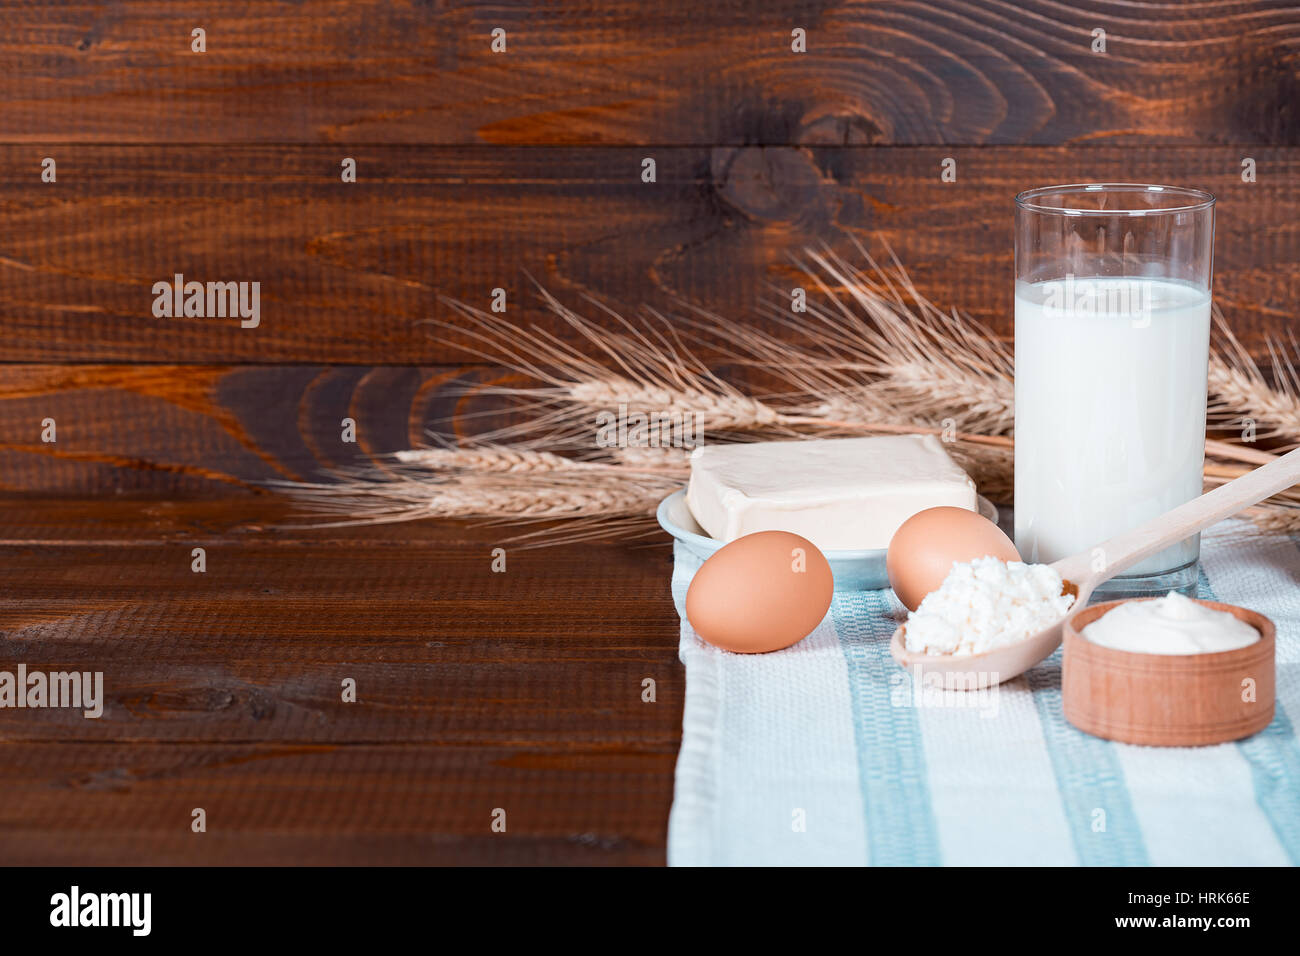 Hausgemachte Naturprodukte: Milch, Käse, saurer Sahne und Eiern auf alten hölzernen Hintergrund mit Ähren. Mit Platz für Ihren text Stockfoto